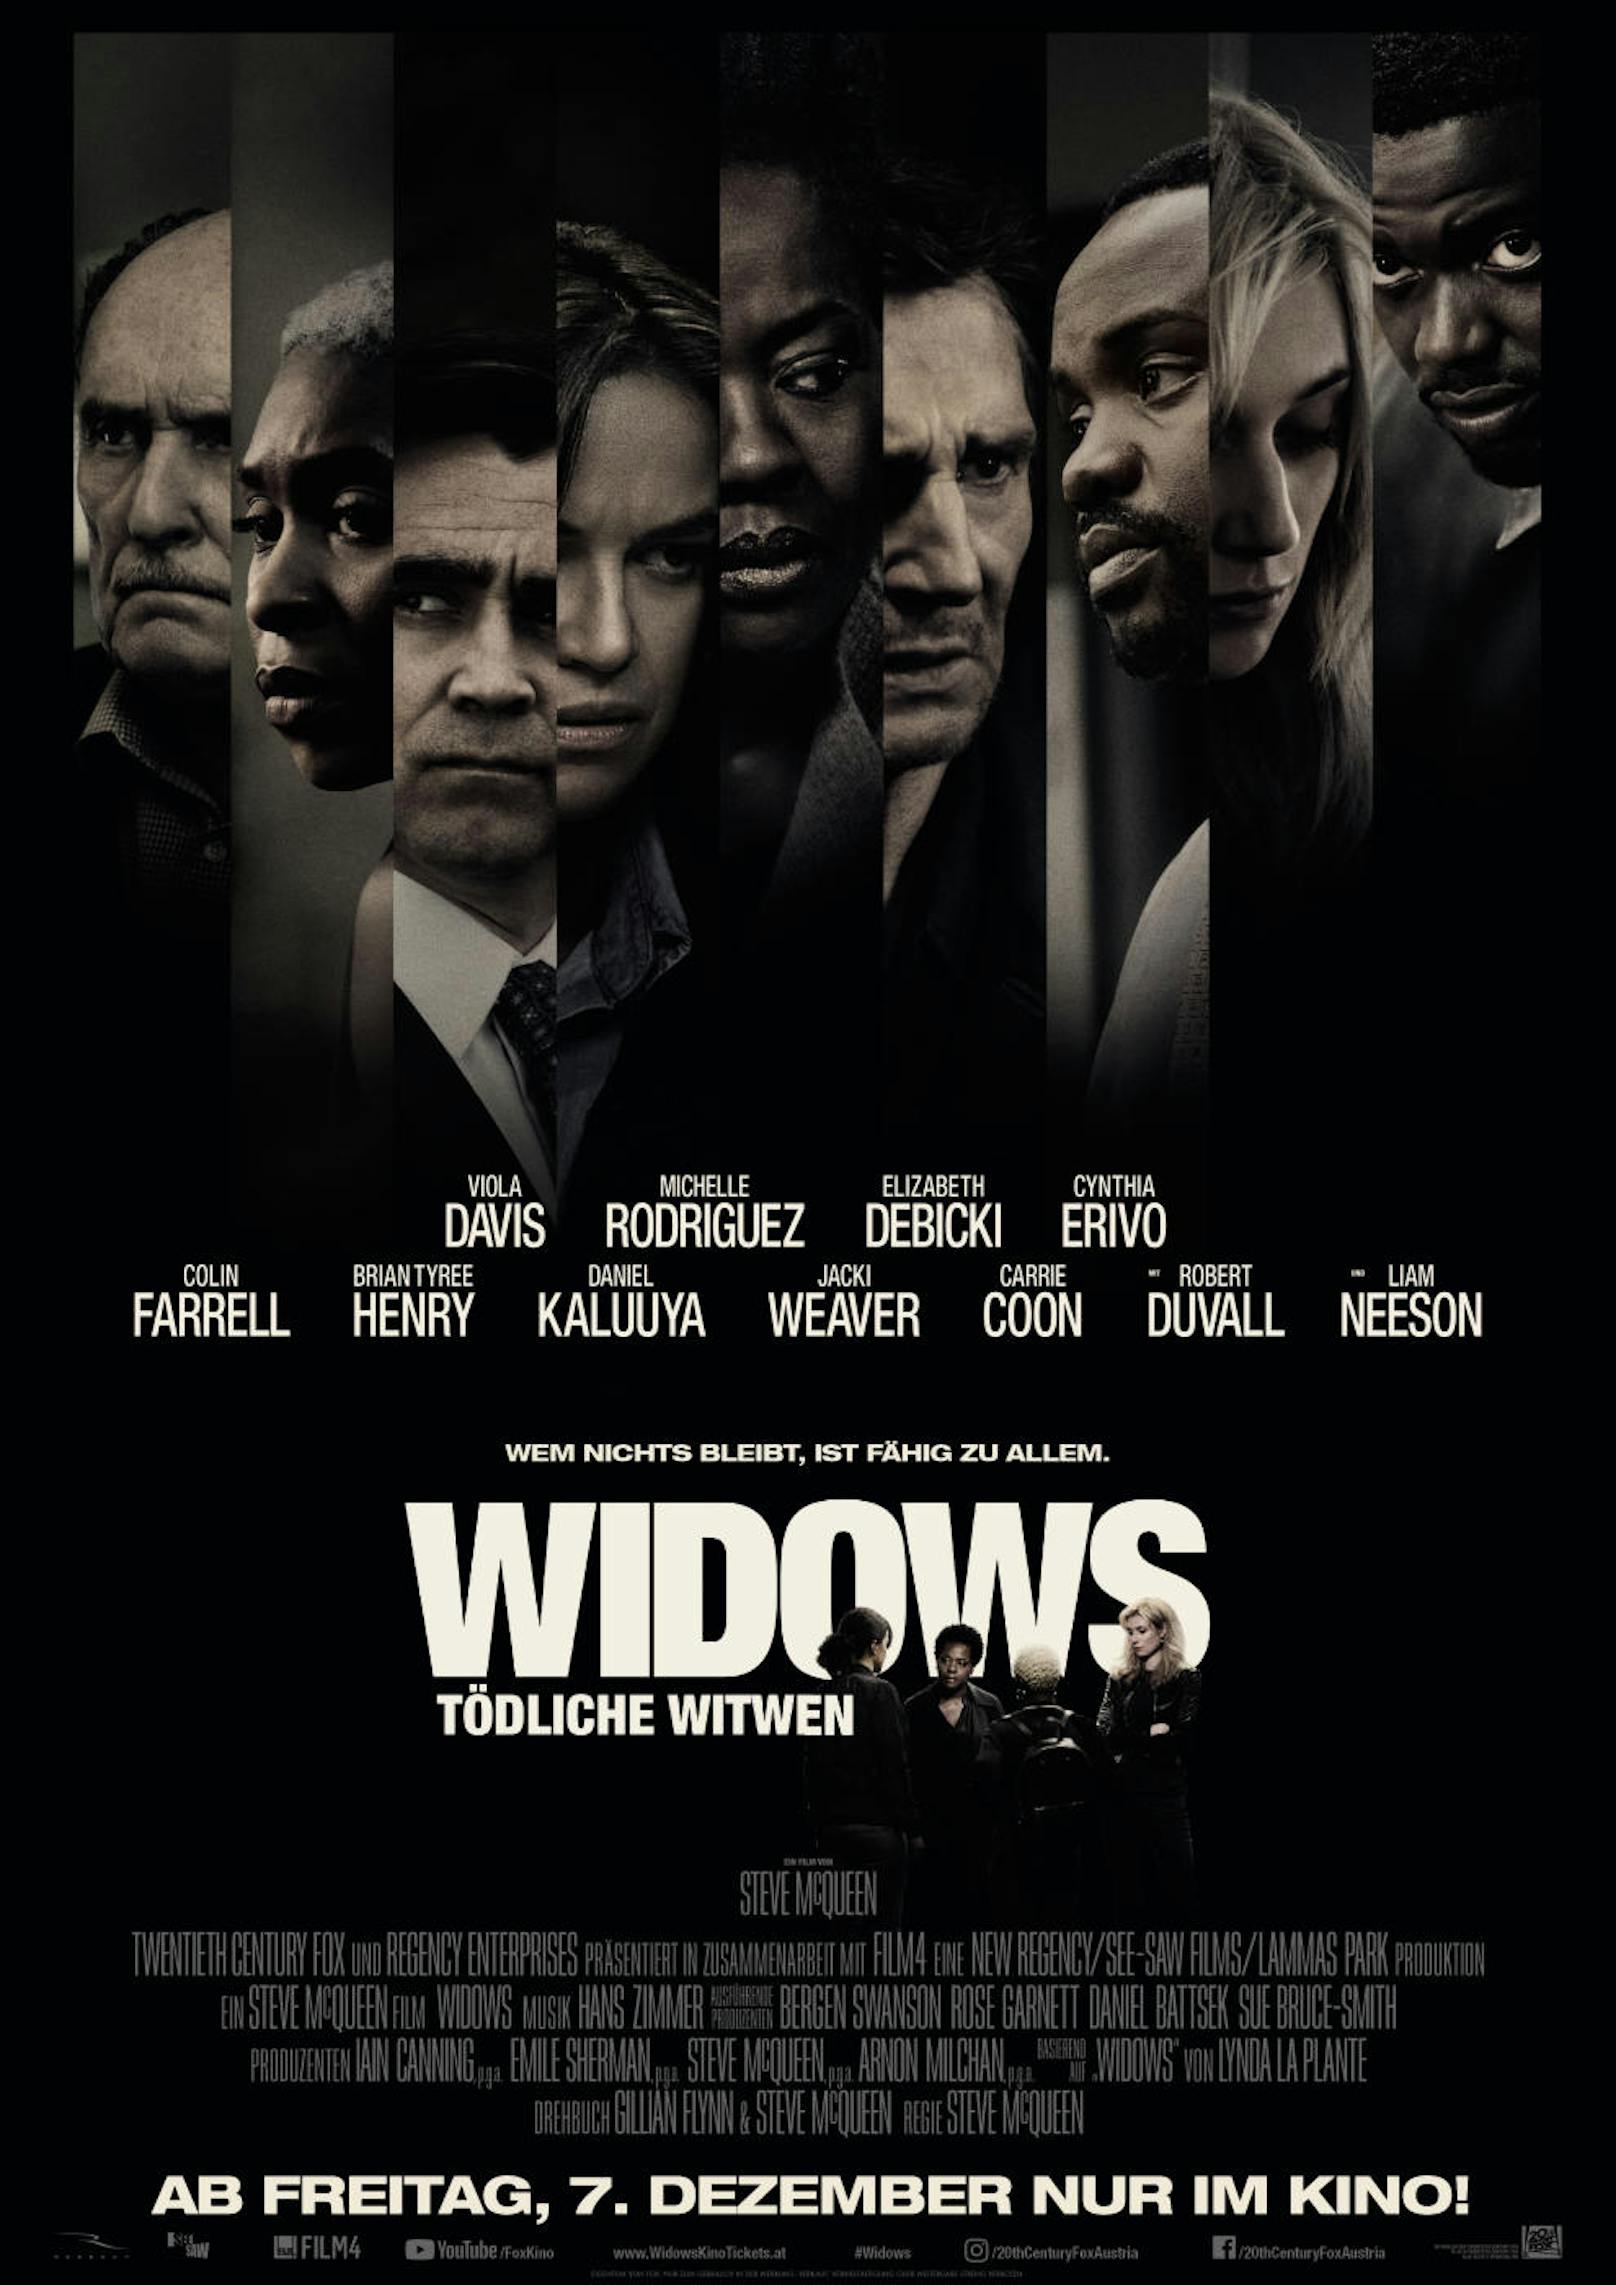 Widows - Tödliche Witwen ist so dunkel wie sein Plakat